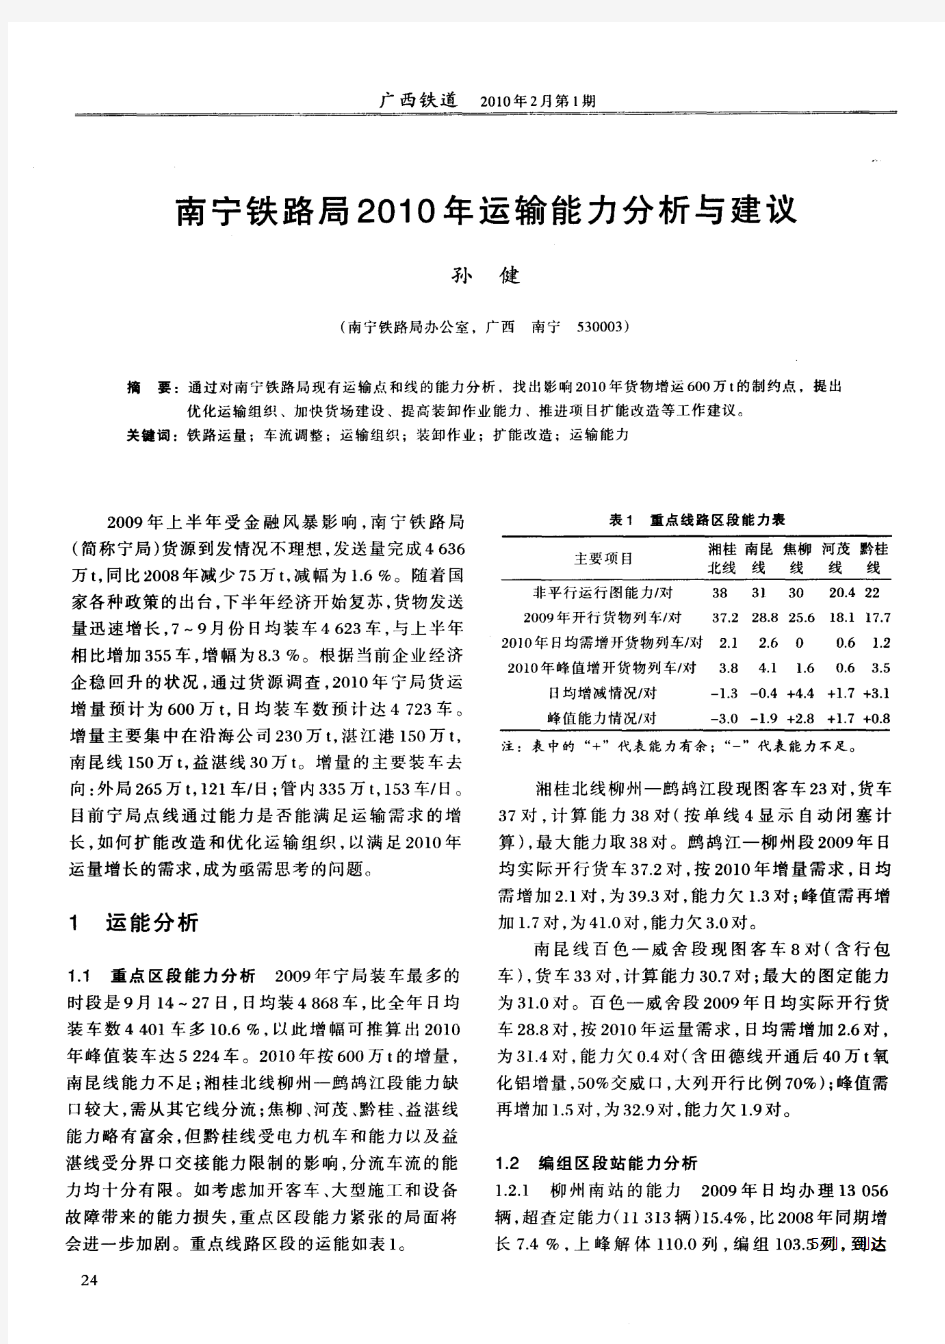 南宁铁路局2010年运输能力分析与建议